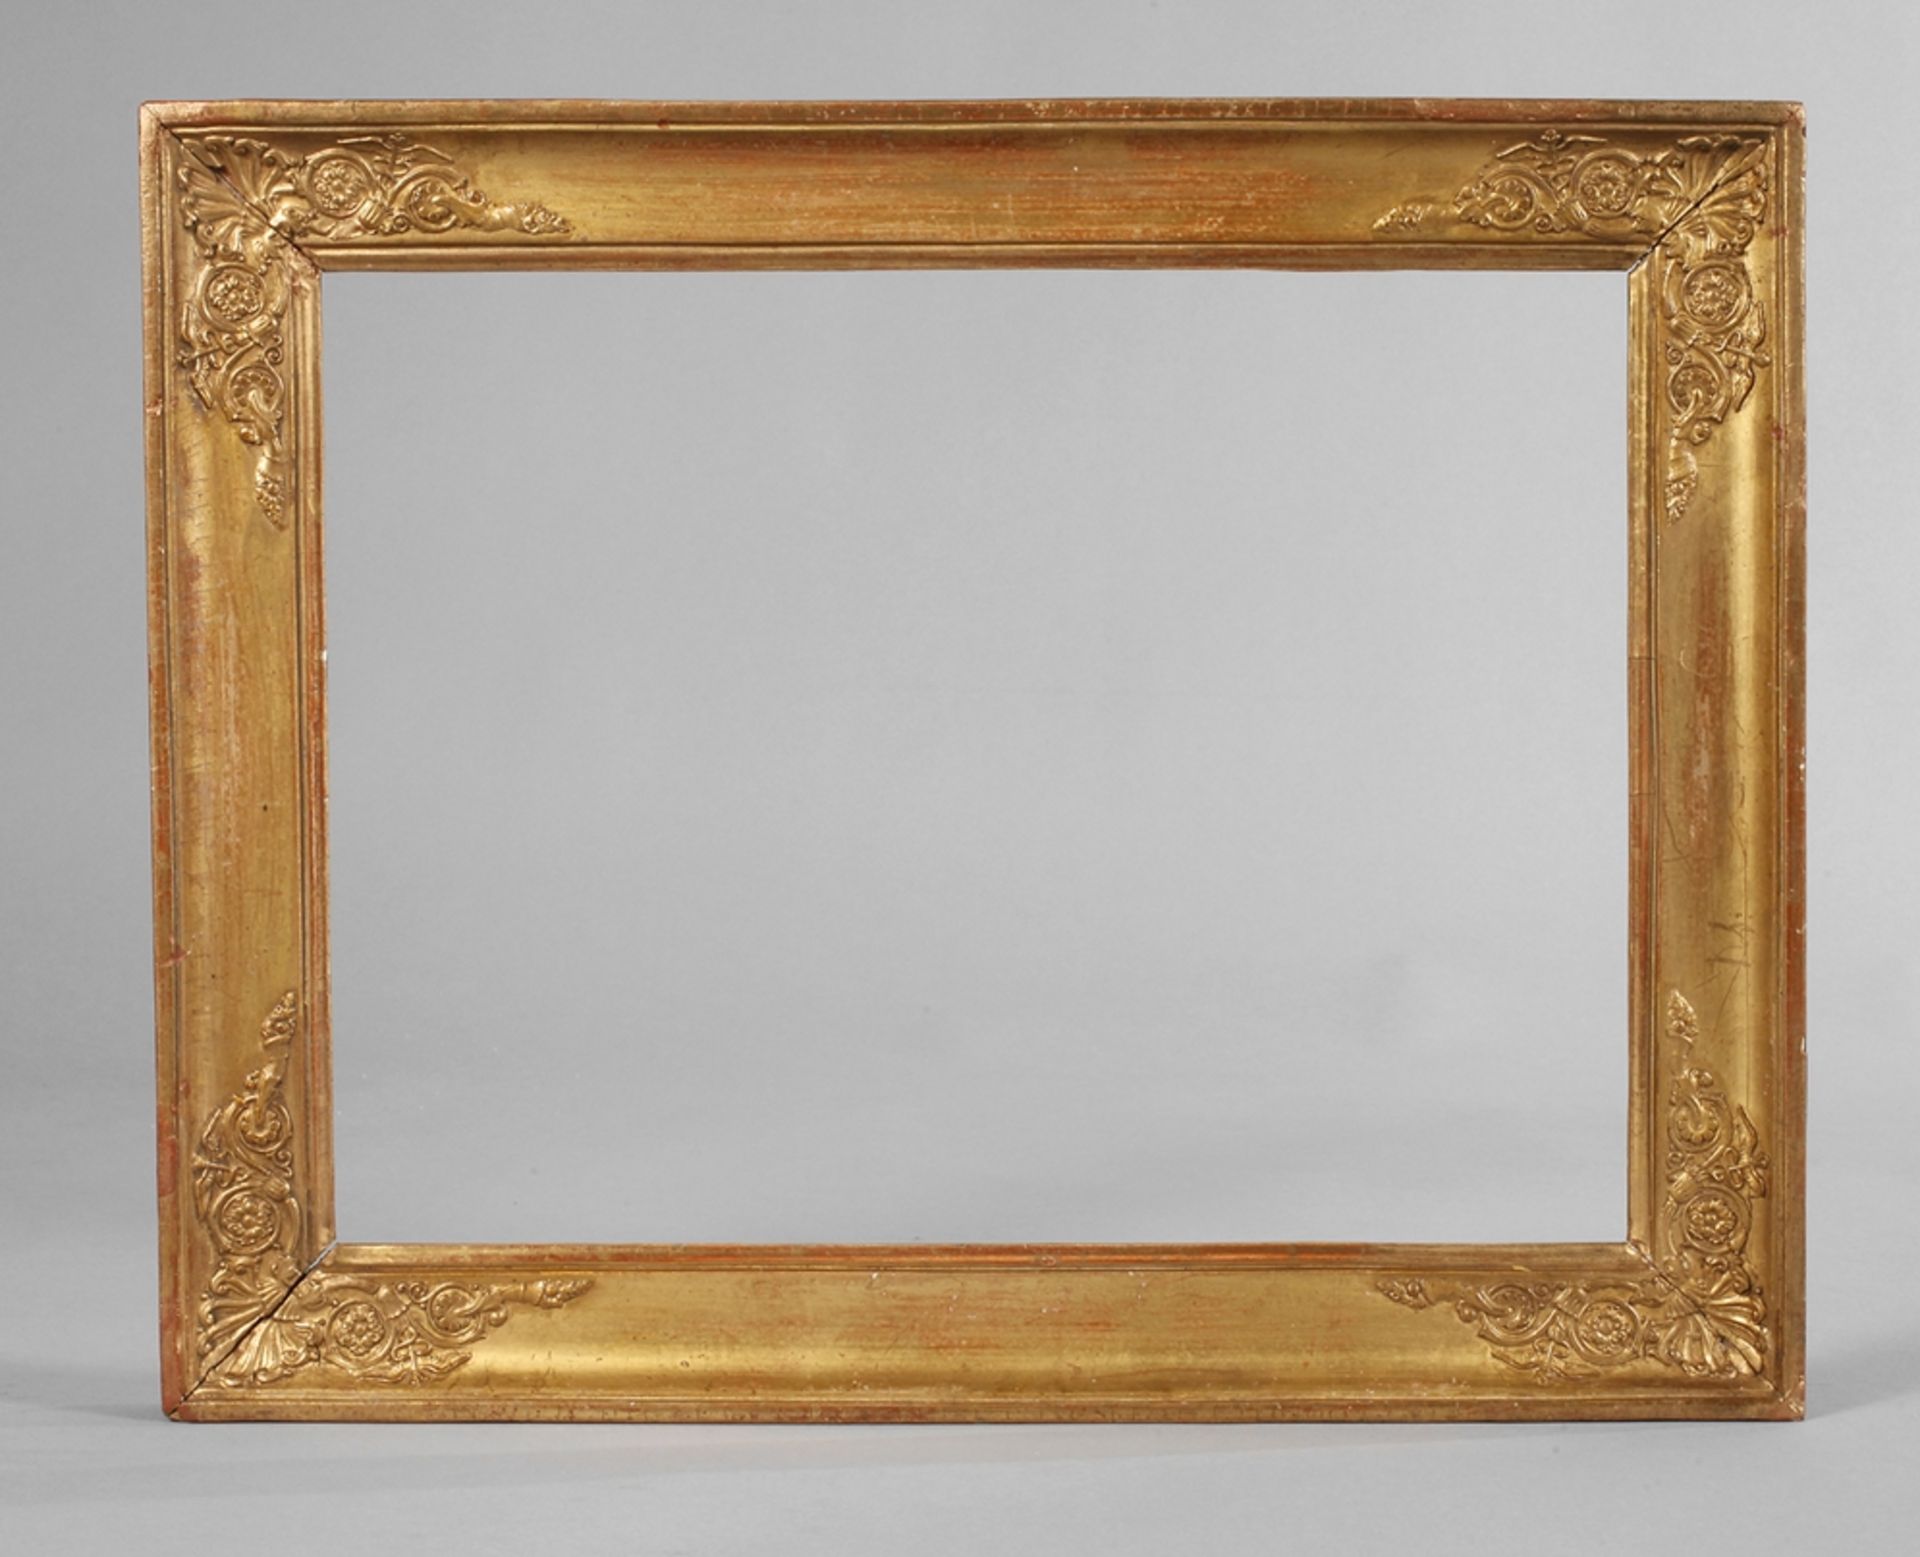 Goldstuckrahmen um 1860, ca. 5,5 cm breite, steigend profilierte, mit Eckkartuschen gestuckte und